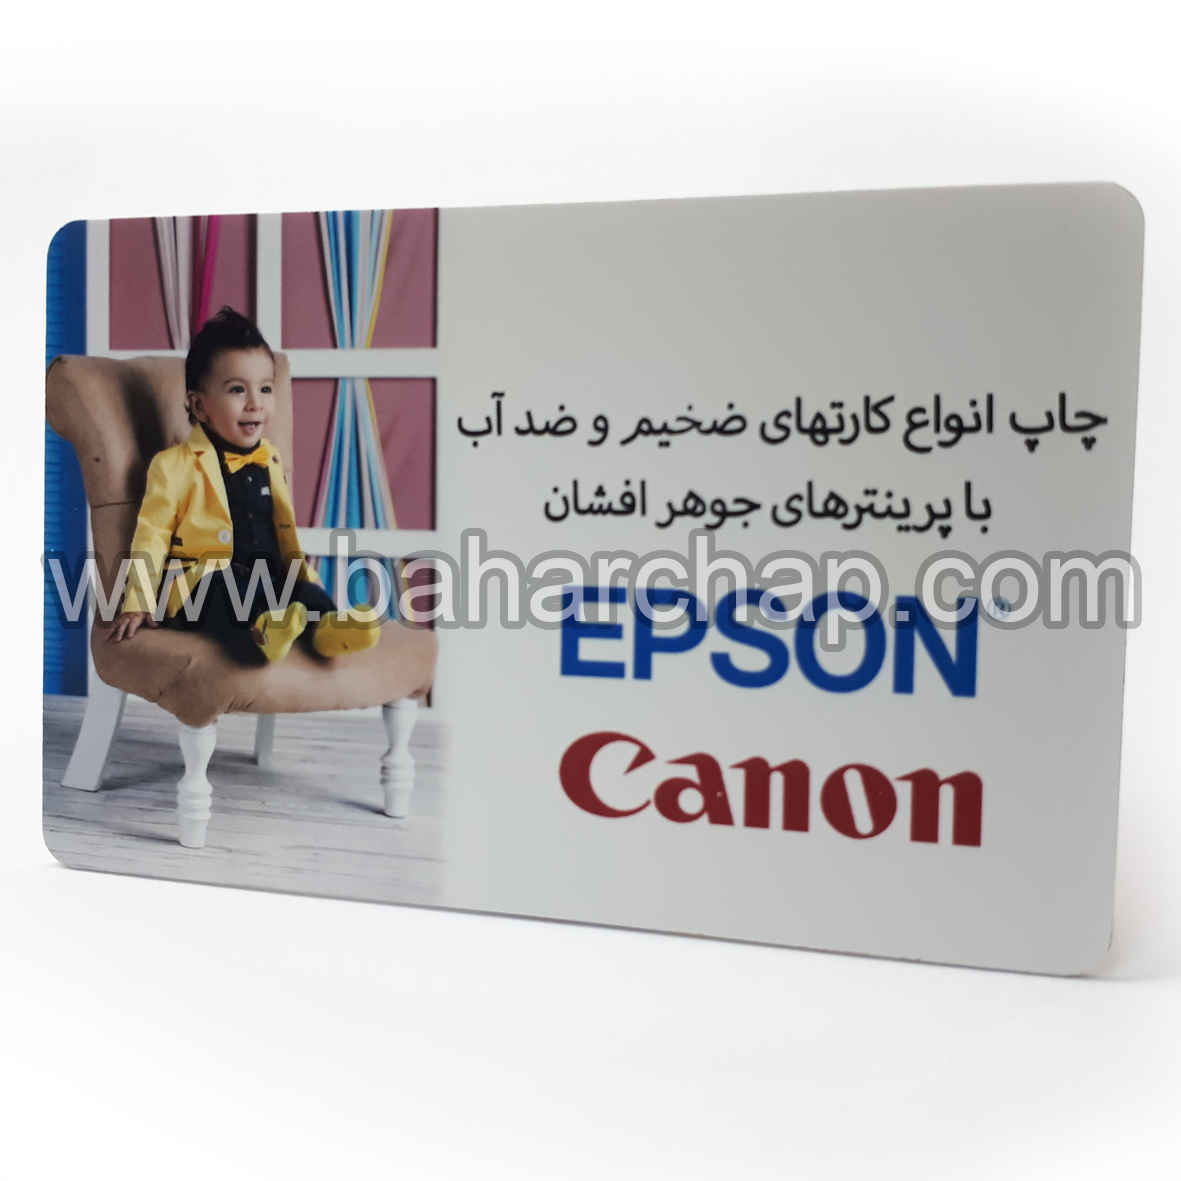 فروشگاه و خدمات اینترنتی بهارچاپ اصفهان-کارت خام PVC جوهر افشان (مات)-PVC card Matte for inkjet epson and canon printer